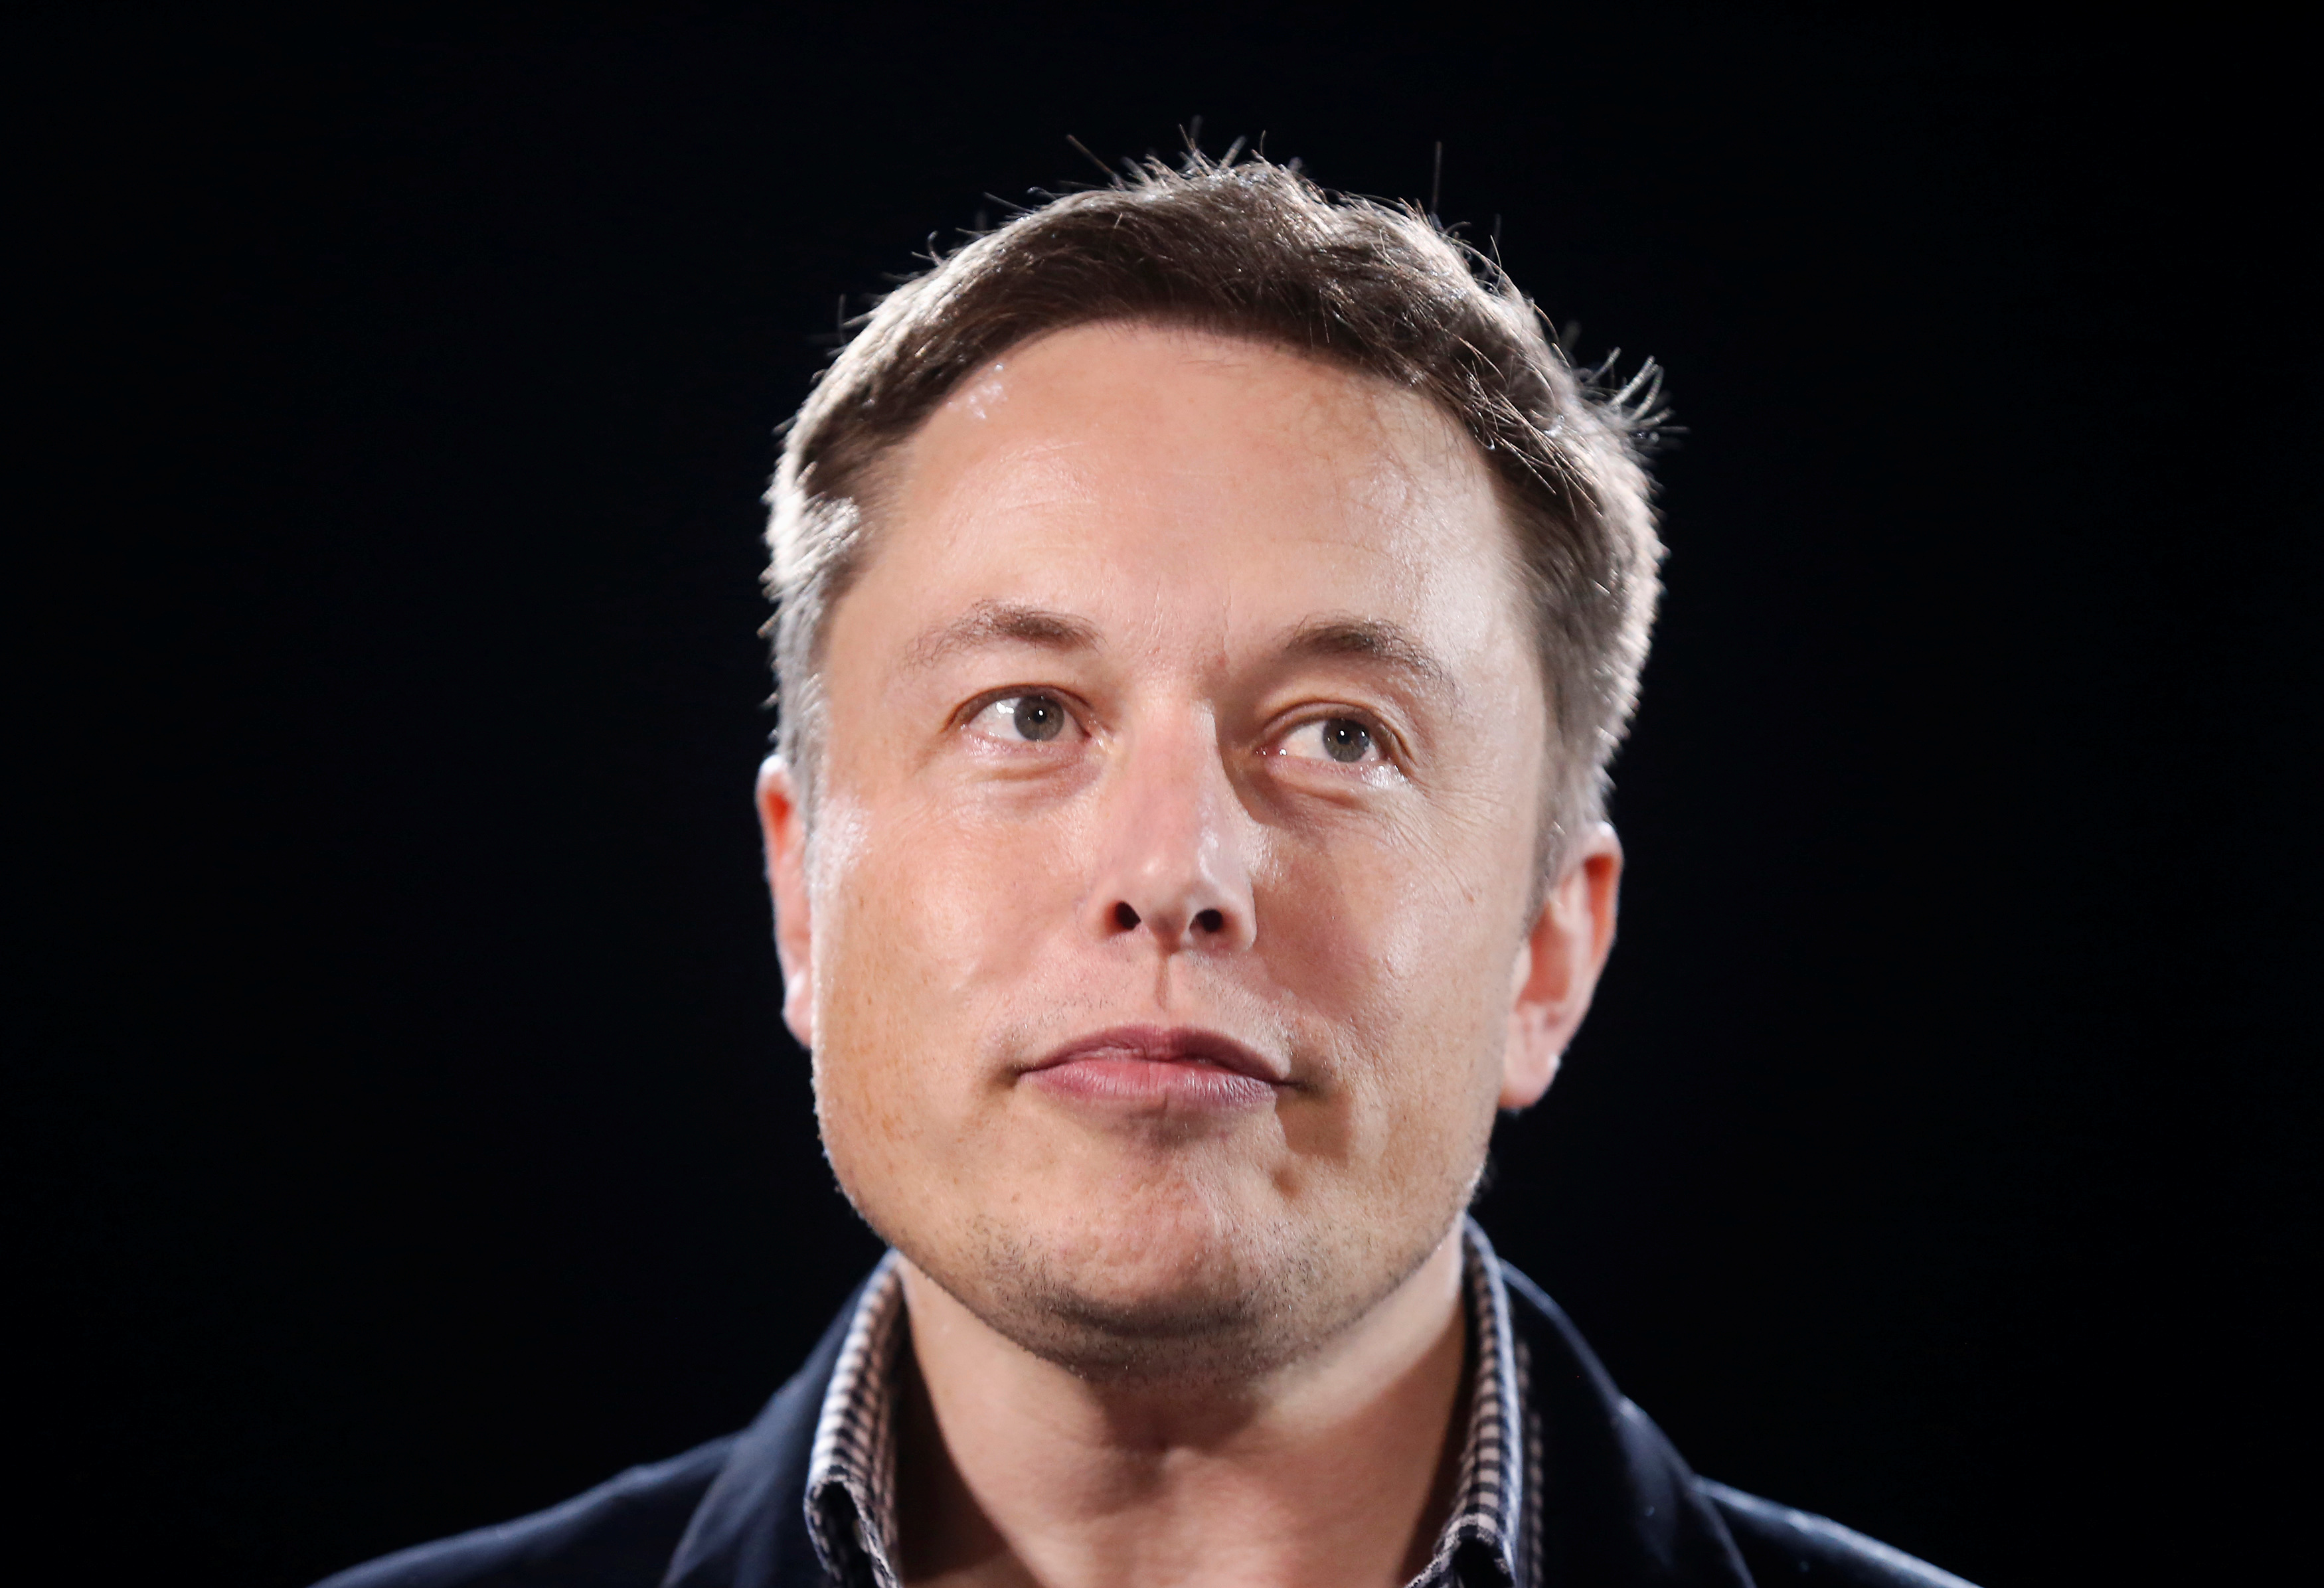 Les tweets erratiques d'Elon Musk déplaisent aux autorités financières américaines